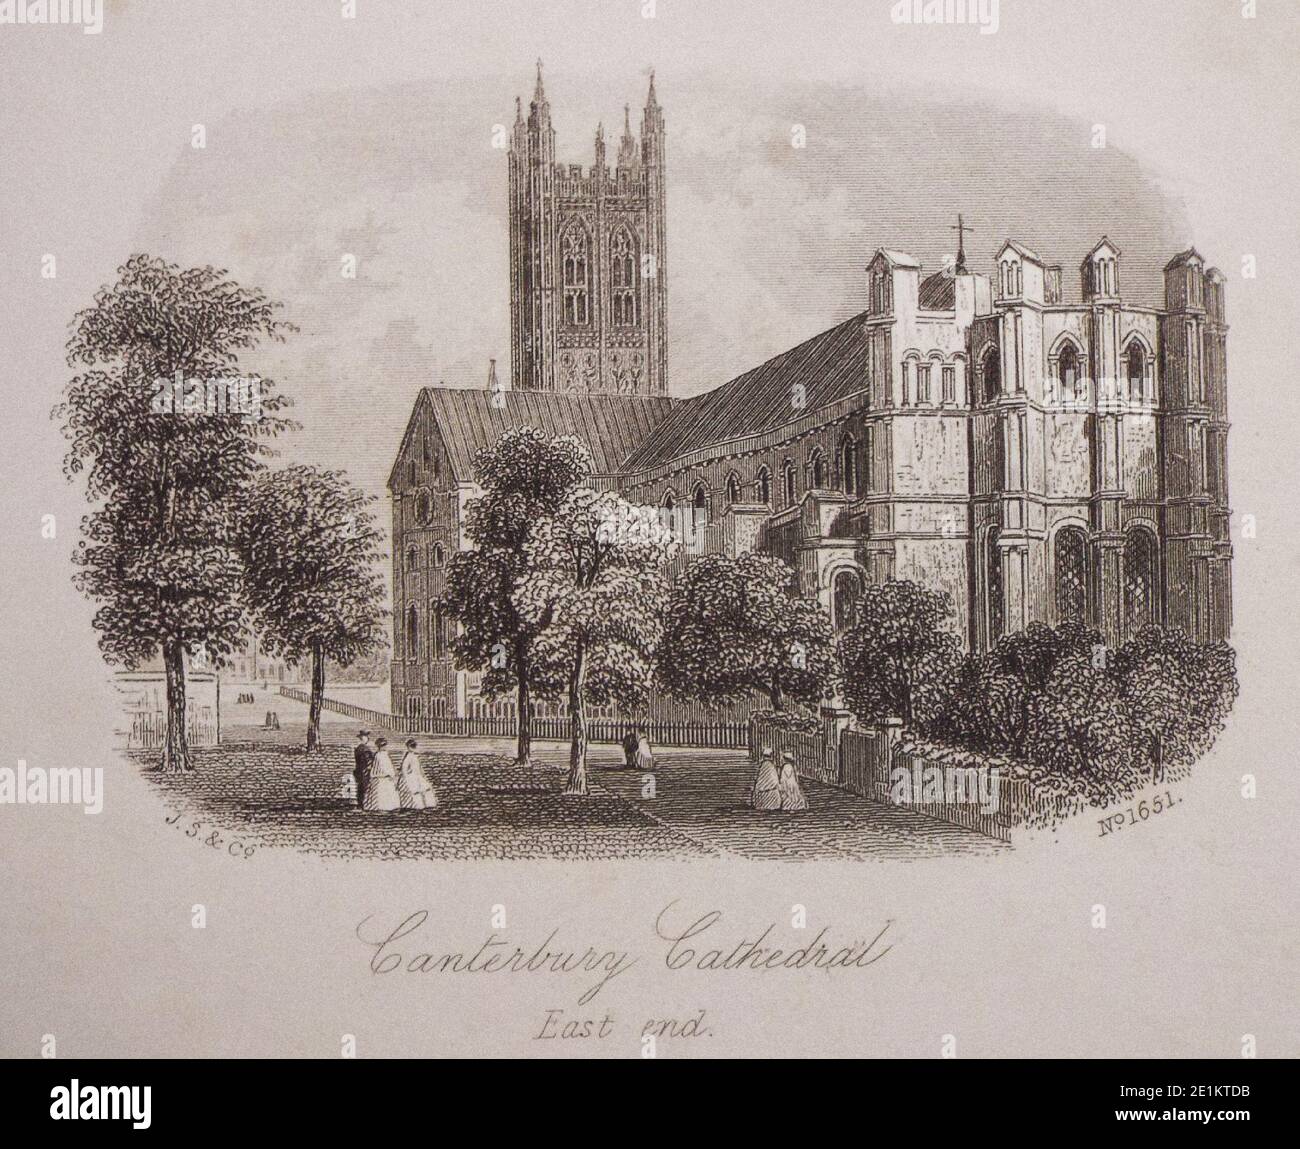 Gravure ancienne de la cathédrale de Canterbury. Extrémité est. Le 19e siècle Banque D'Images